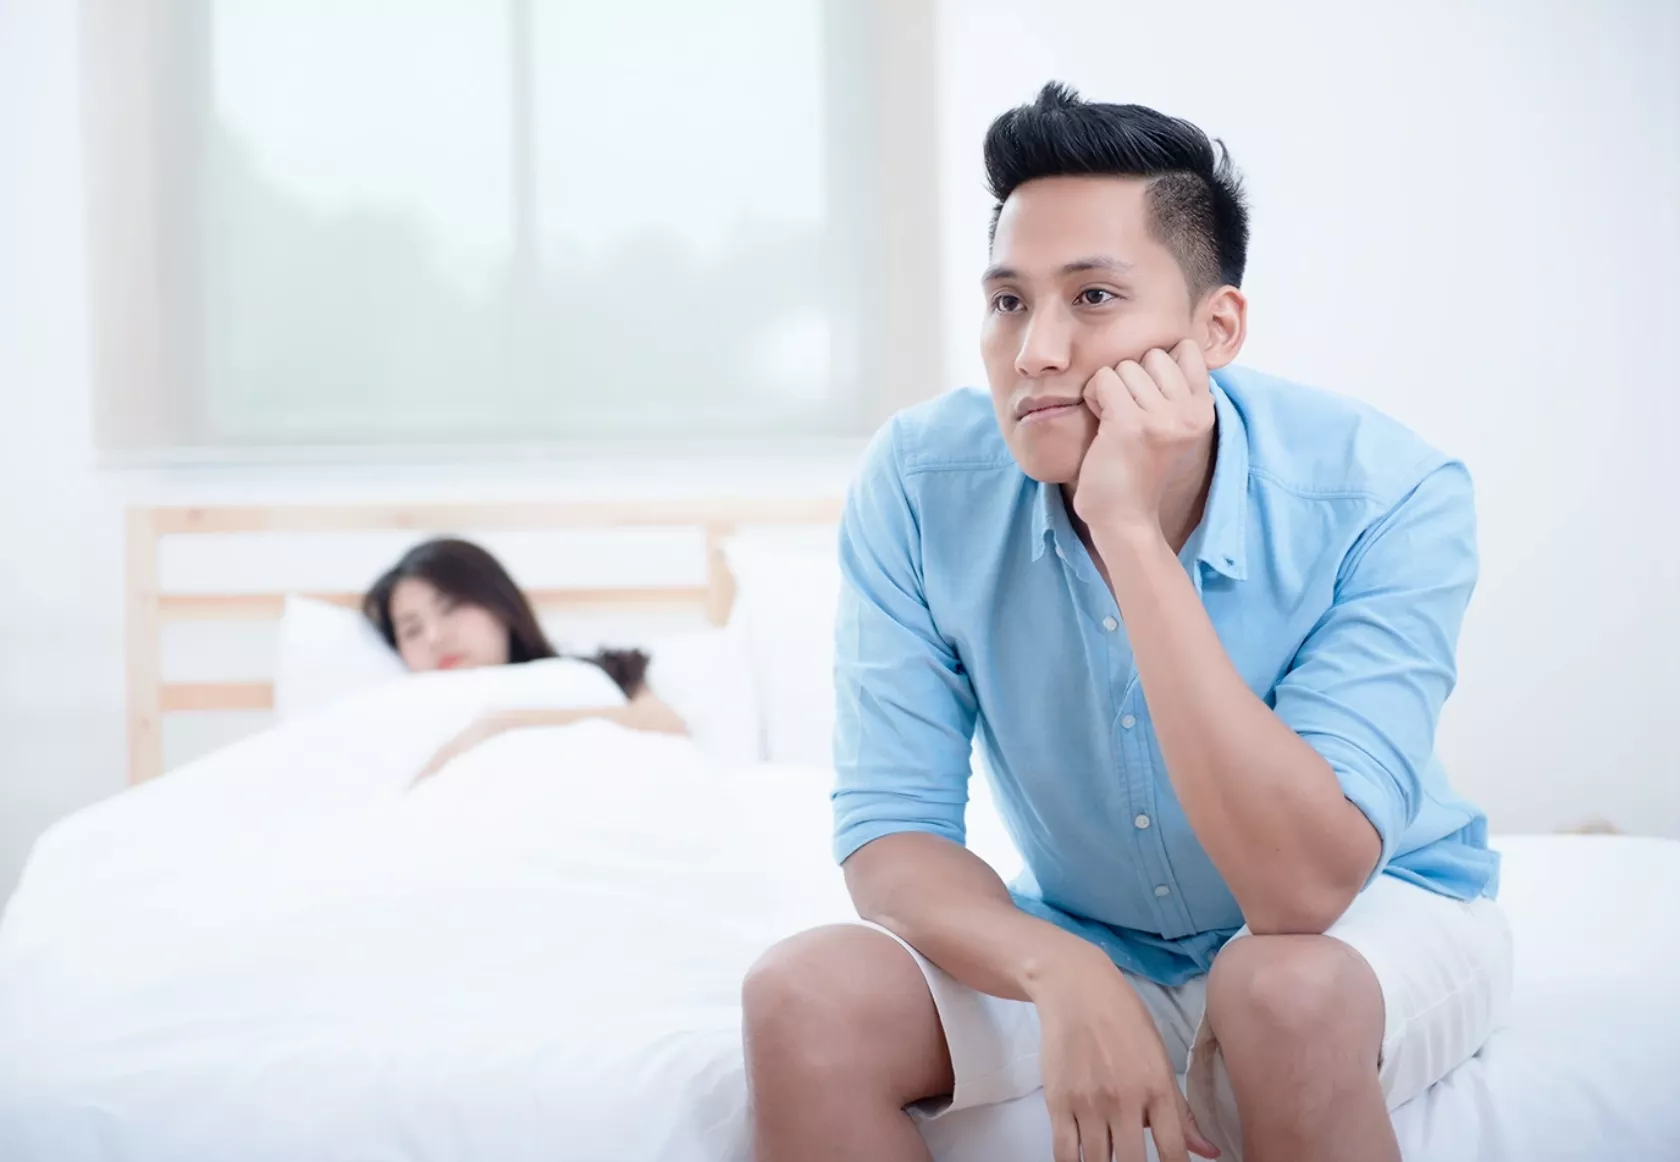 Junger Mann sitzt traurig am Rand des Bettes, in dem seine Partnerin liegt.